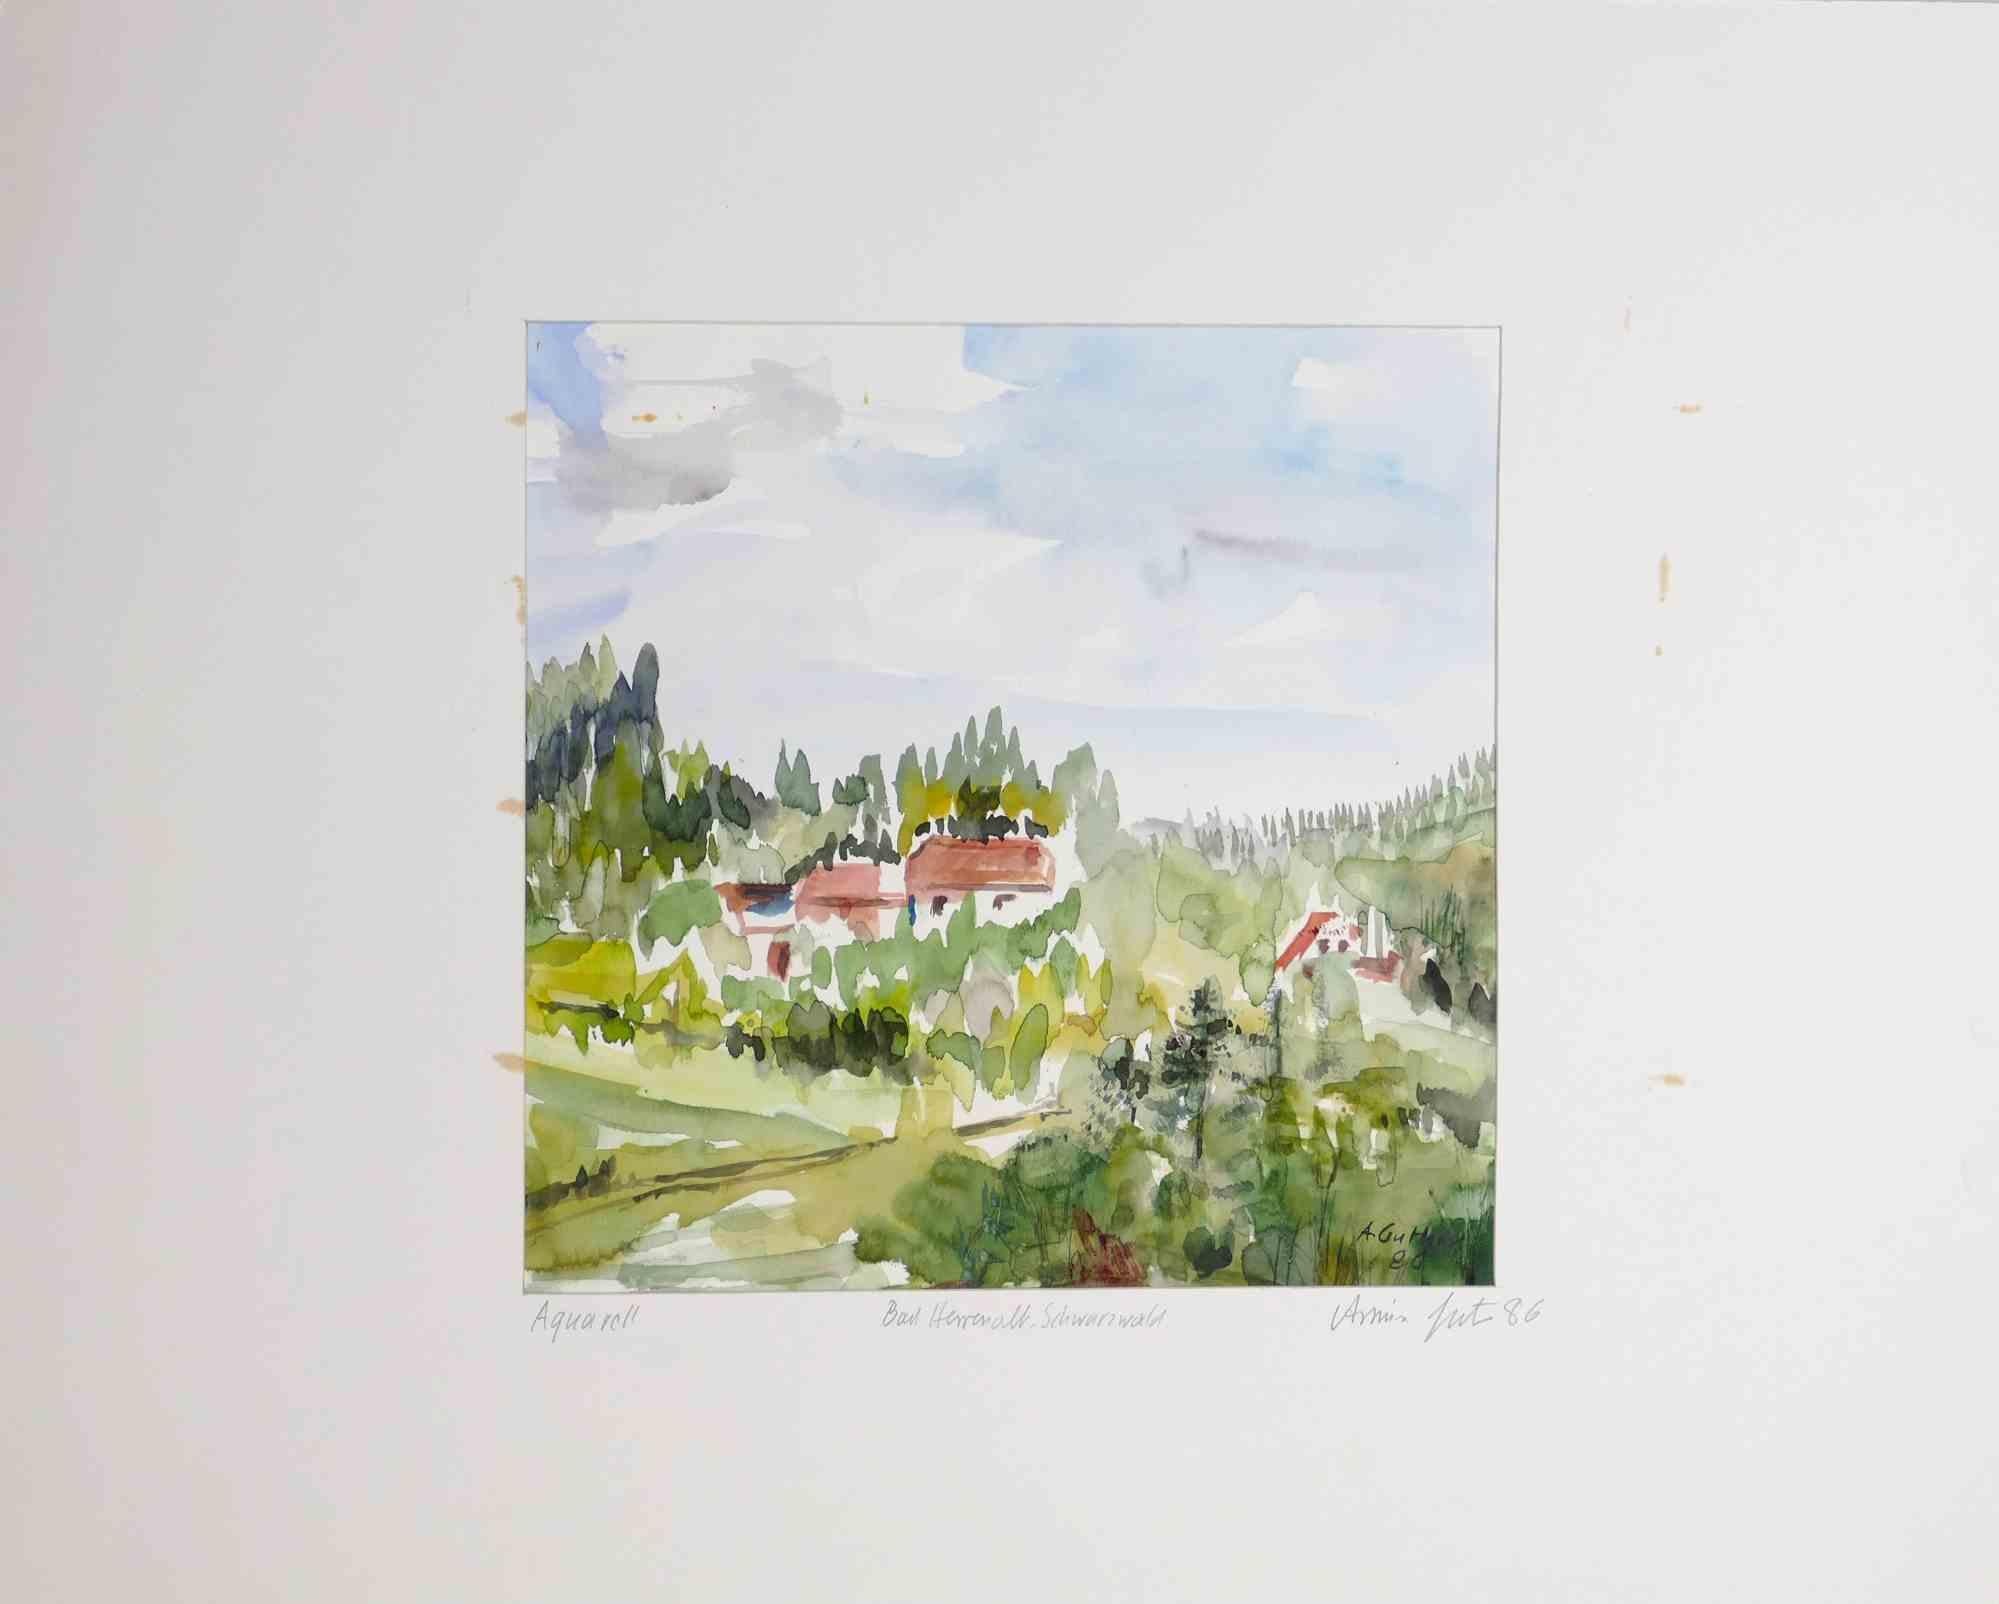 Landschaft  ist eine Aquarellzeichnung von Armin Guther aus dem Jahr 1986.

Handsigniert und datiert in der rechten unteren Ecke.

Guter Zustand, einschließlich eines Passepartouts aus weißem Karton (40 x 50 cm).

Die Landschaft wird durch weiche